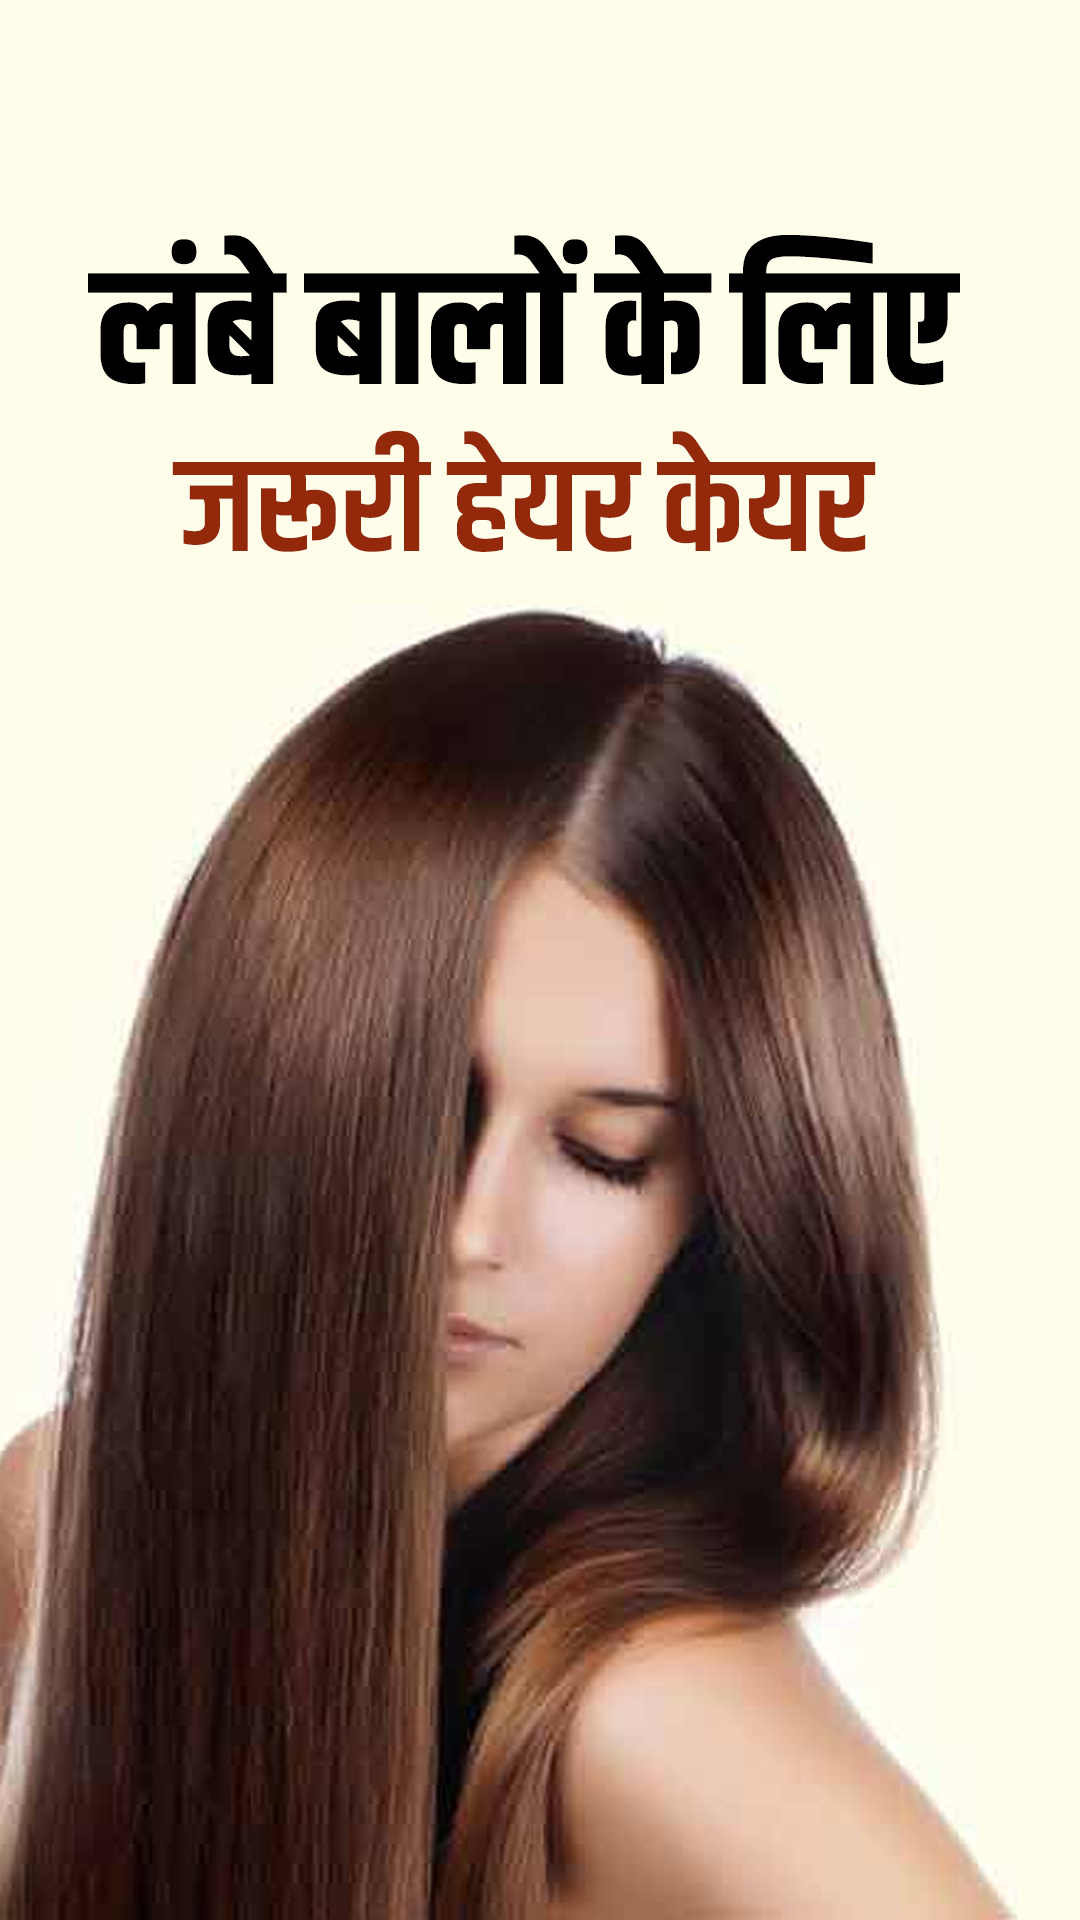 Vitamin E Benefits For Hair Loss In Hindi कय आप भ हयर फल स ह  परशन इस वटमन क इसतमल कर प सकत ह सनहरमजबत बल  lifestyle